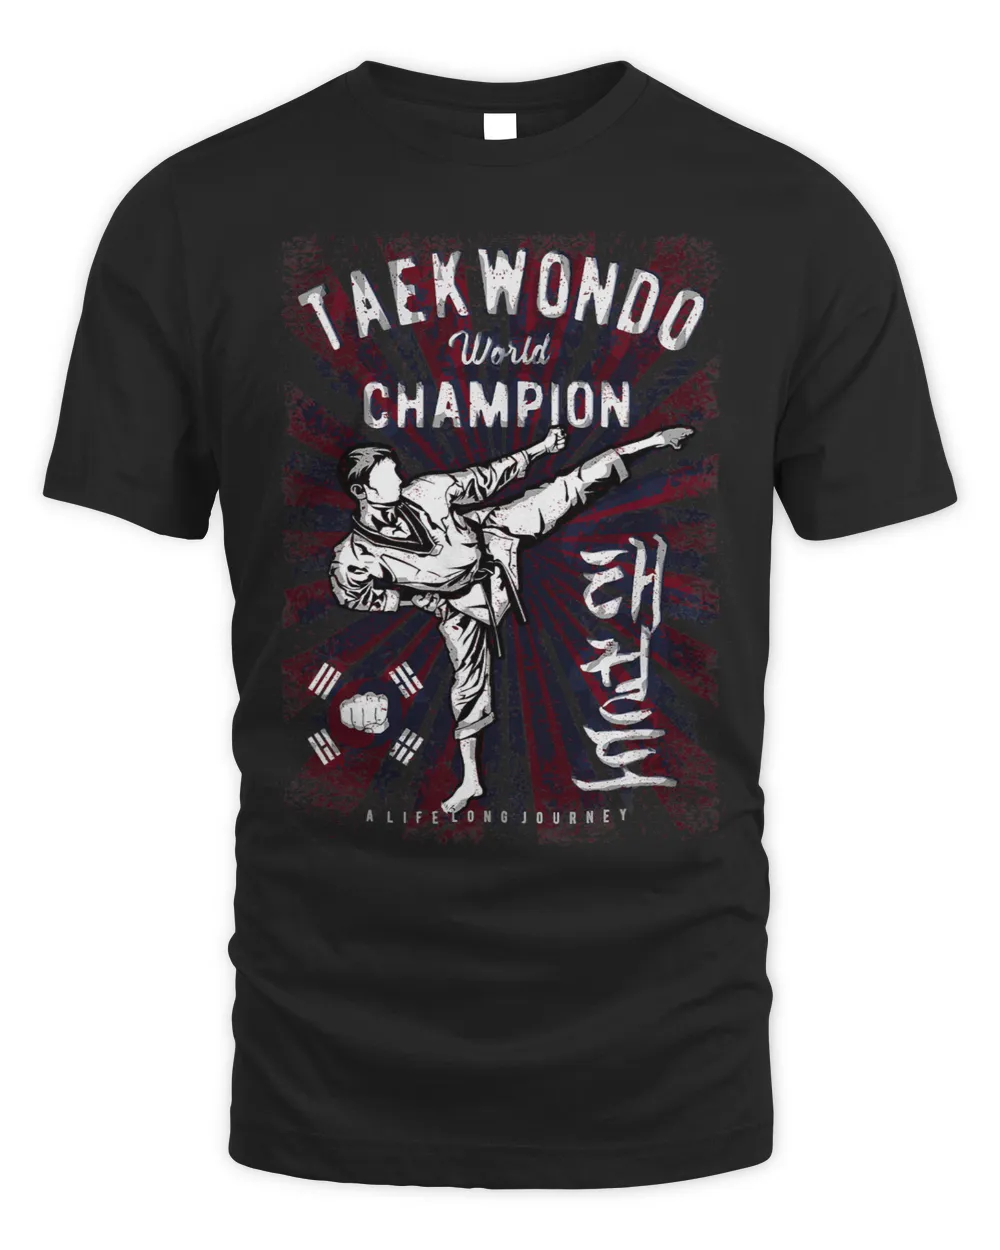 Taekwondo ChampionTKD Tae kwon do Champ